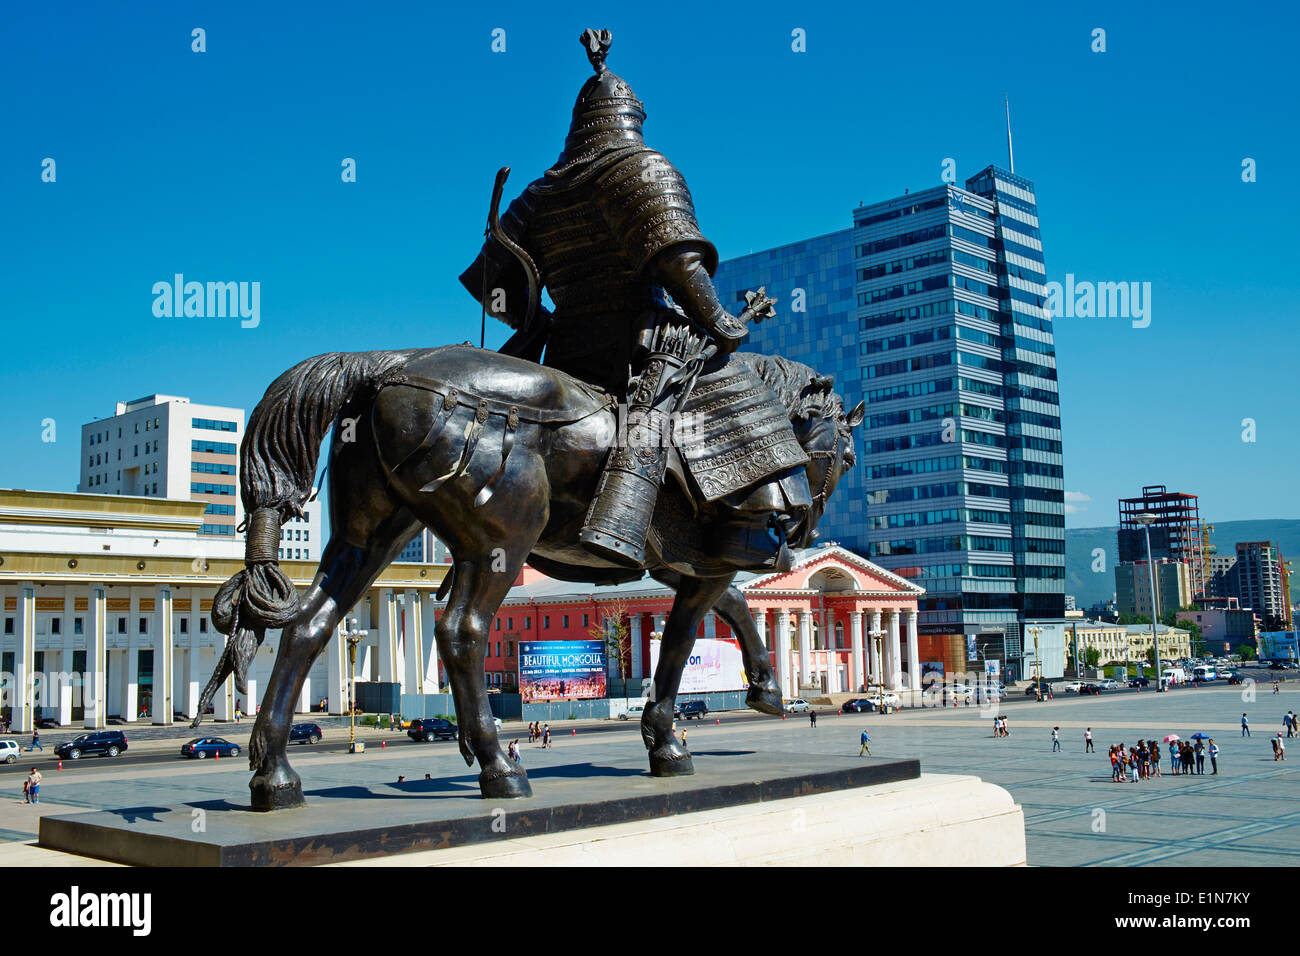 La Mongolie, Oulan Bator, soldat Mongol Sukhbaatar Square, statue devant le parlement Banque D'Images